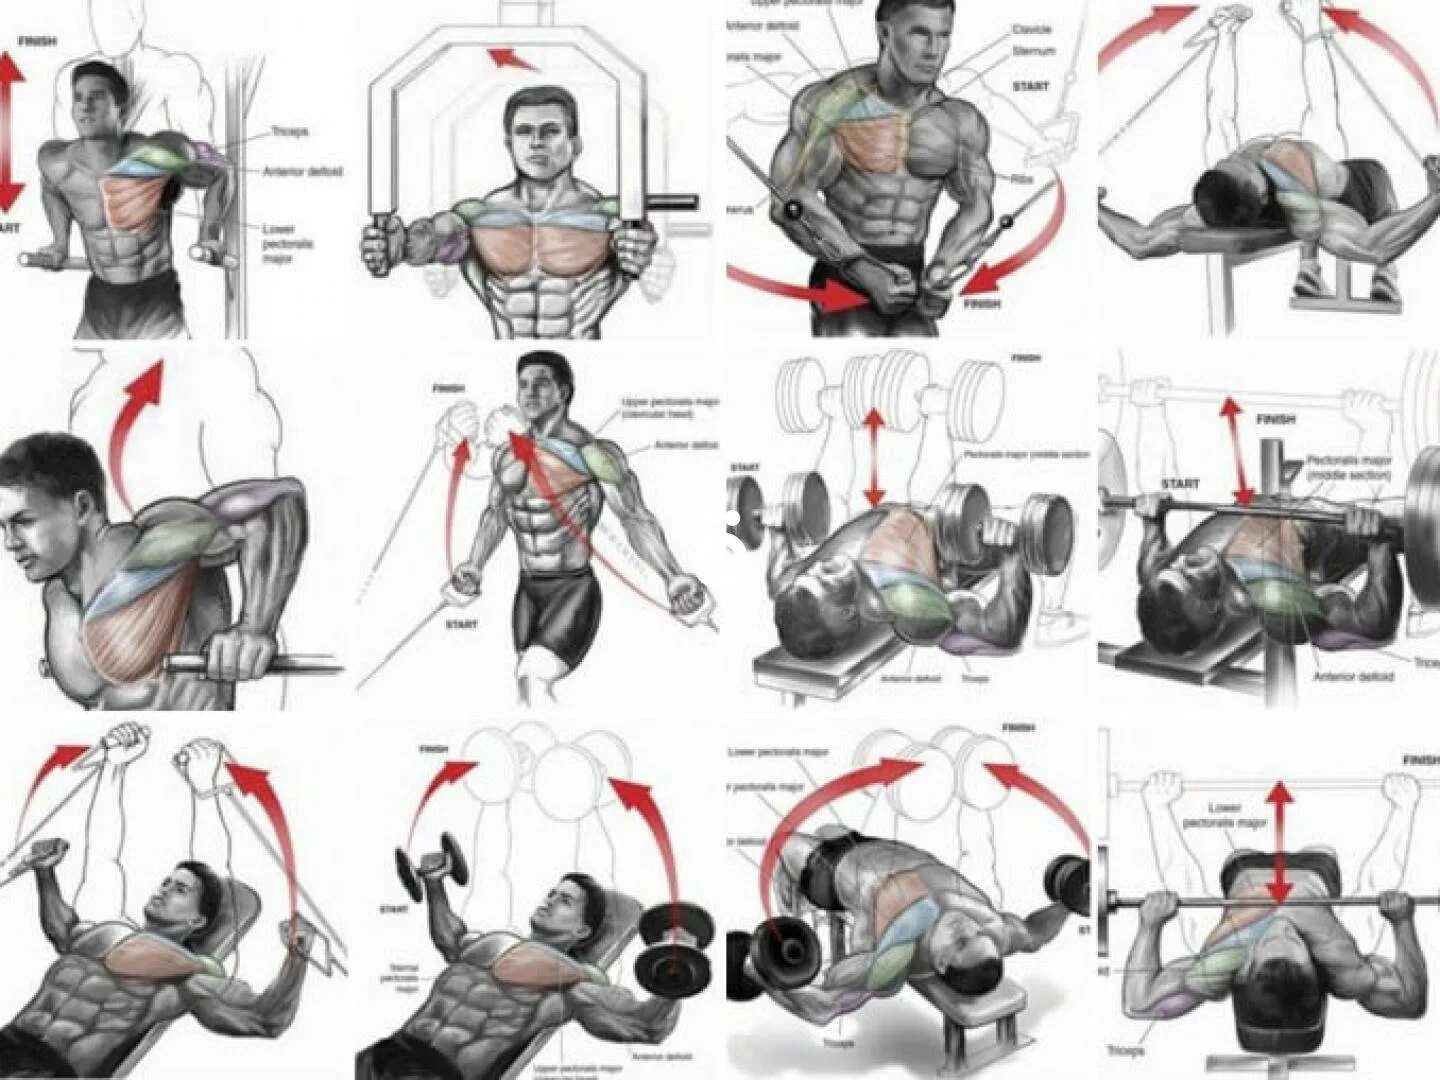 Упражнения на грудные мышцы в тренажерном зале. Упражнения для тренировки грудных мышц в тренажёрном зале для. Тренировка грудных мышц в тренажерном зале для мужчин. Упражнения для прокачки грудных мышц в тренажерном зале. Упражнения на развитие грудных мышц